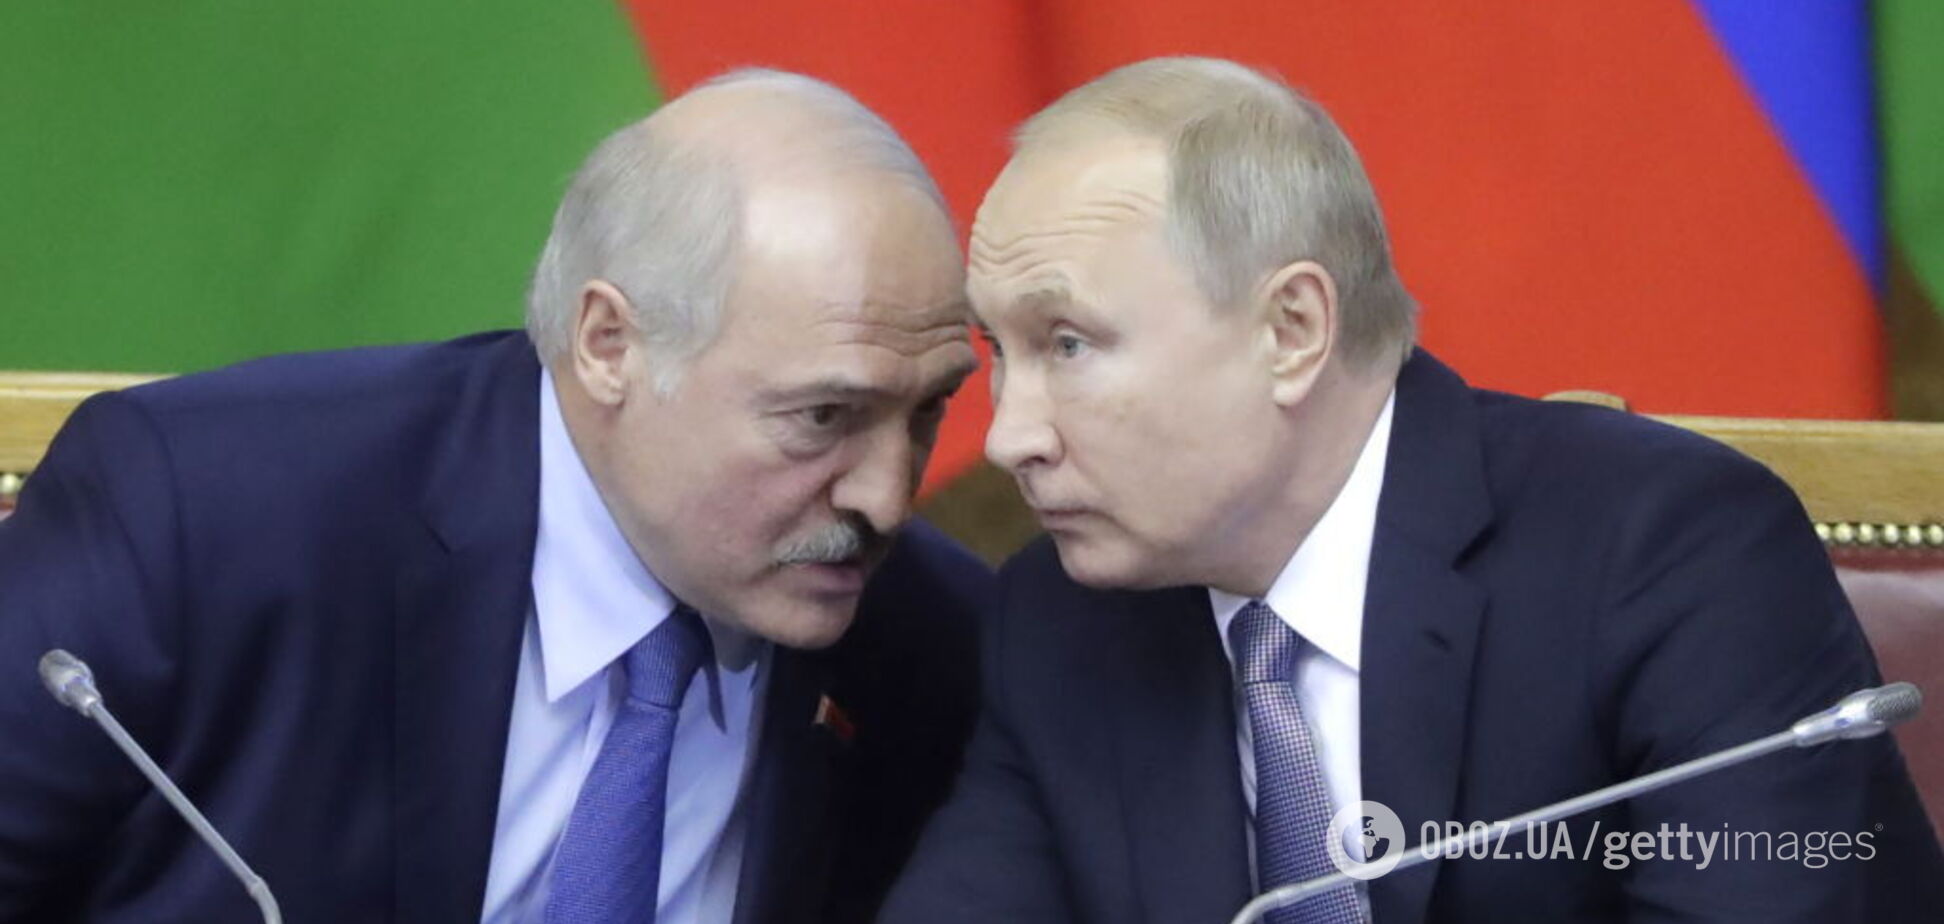 'Покажите человека живого': Лукашенко на встрече с Путиным угодил в конфуз